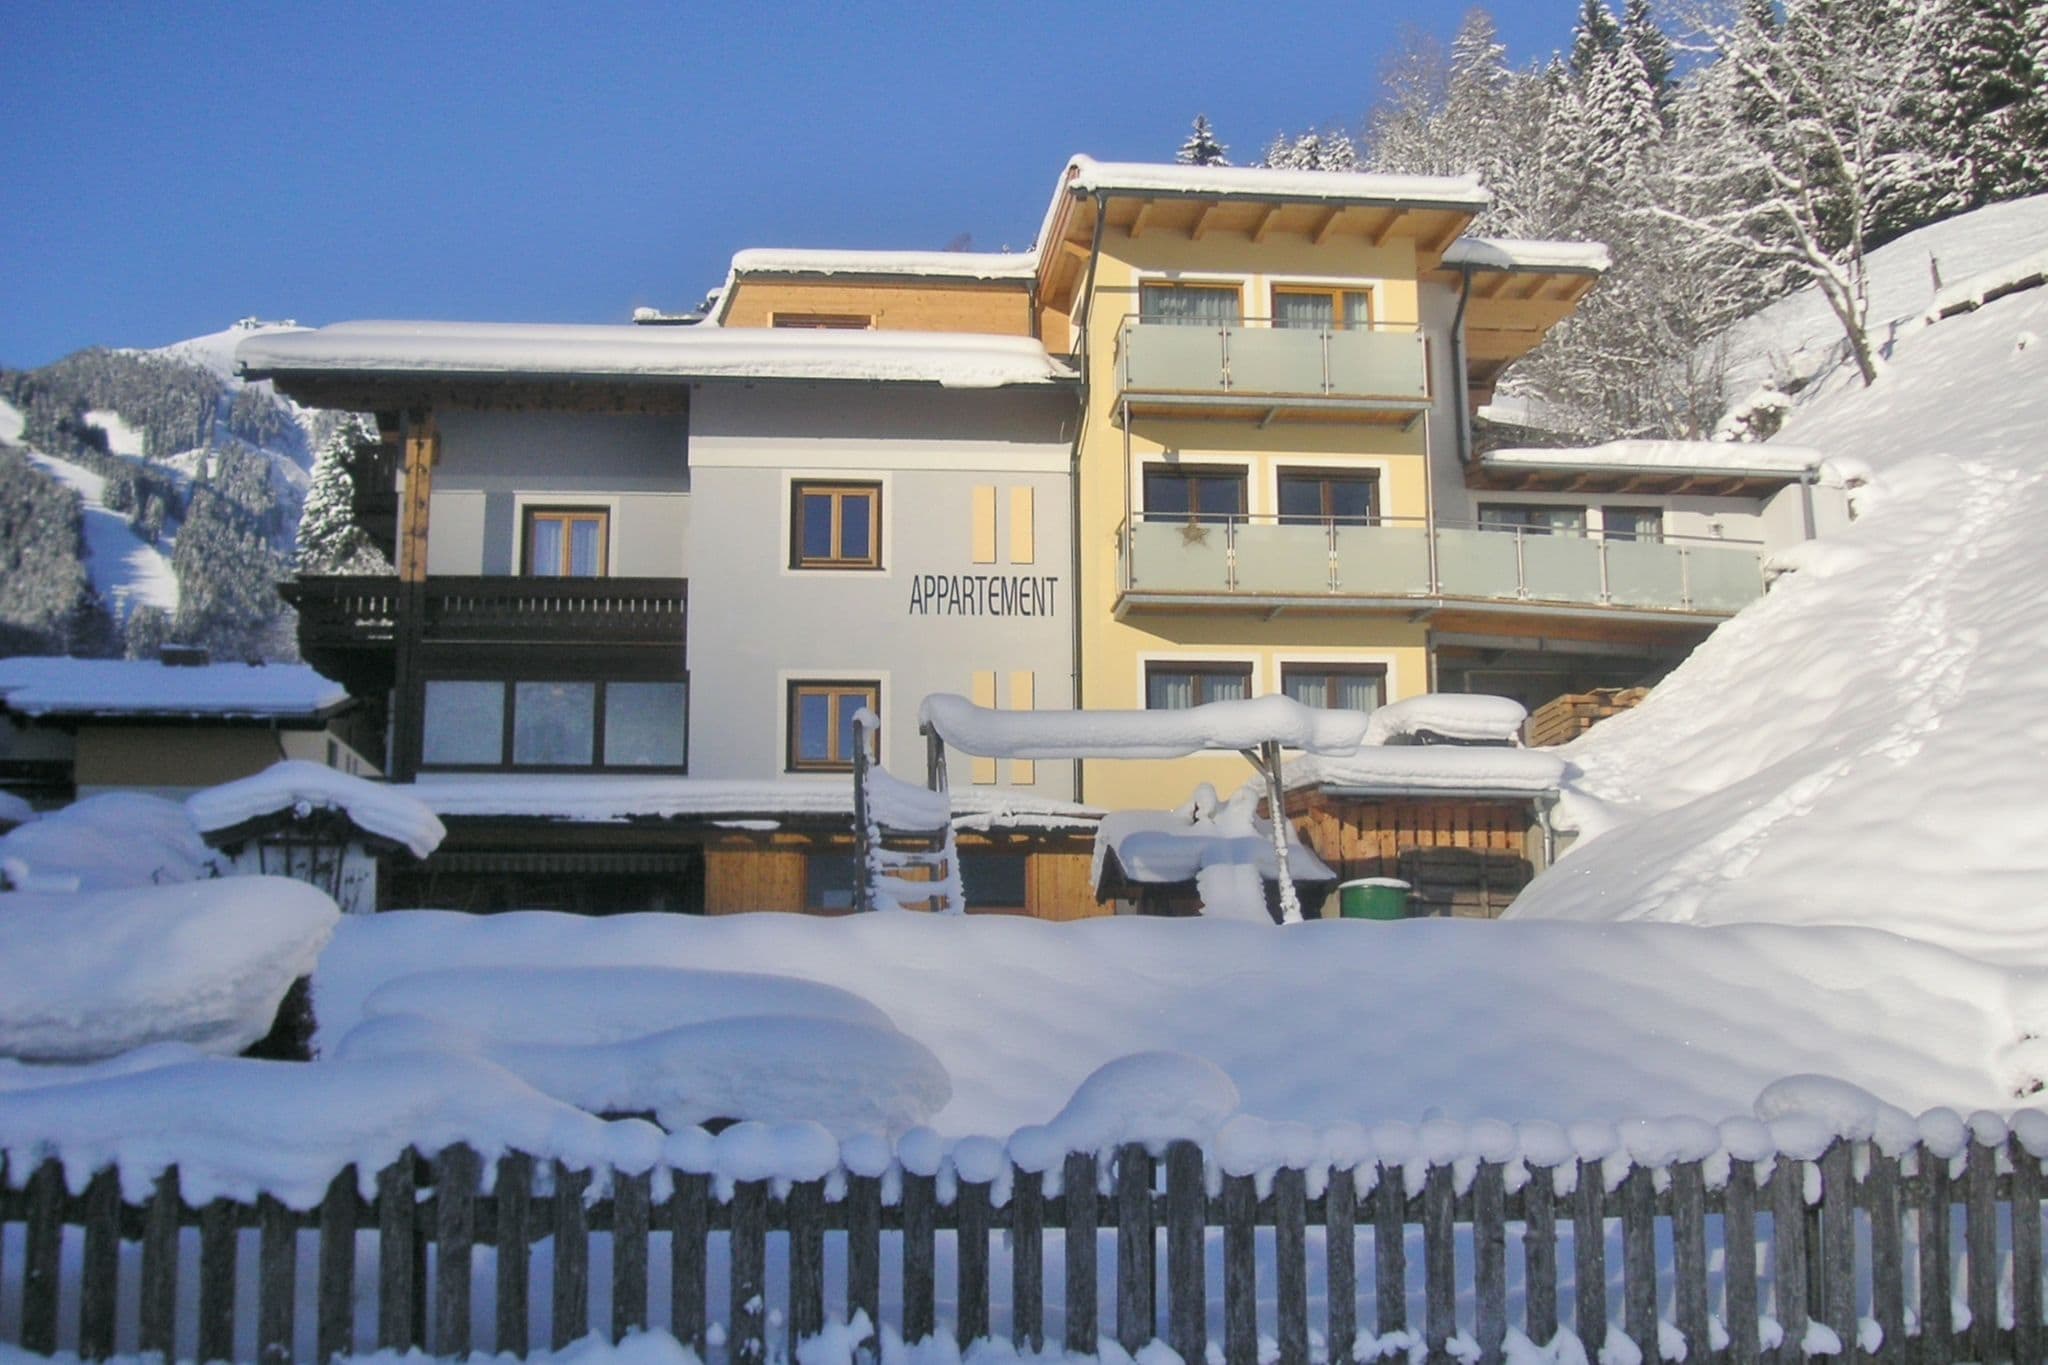 Apartment near the ski area